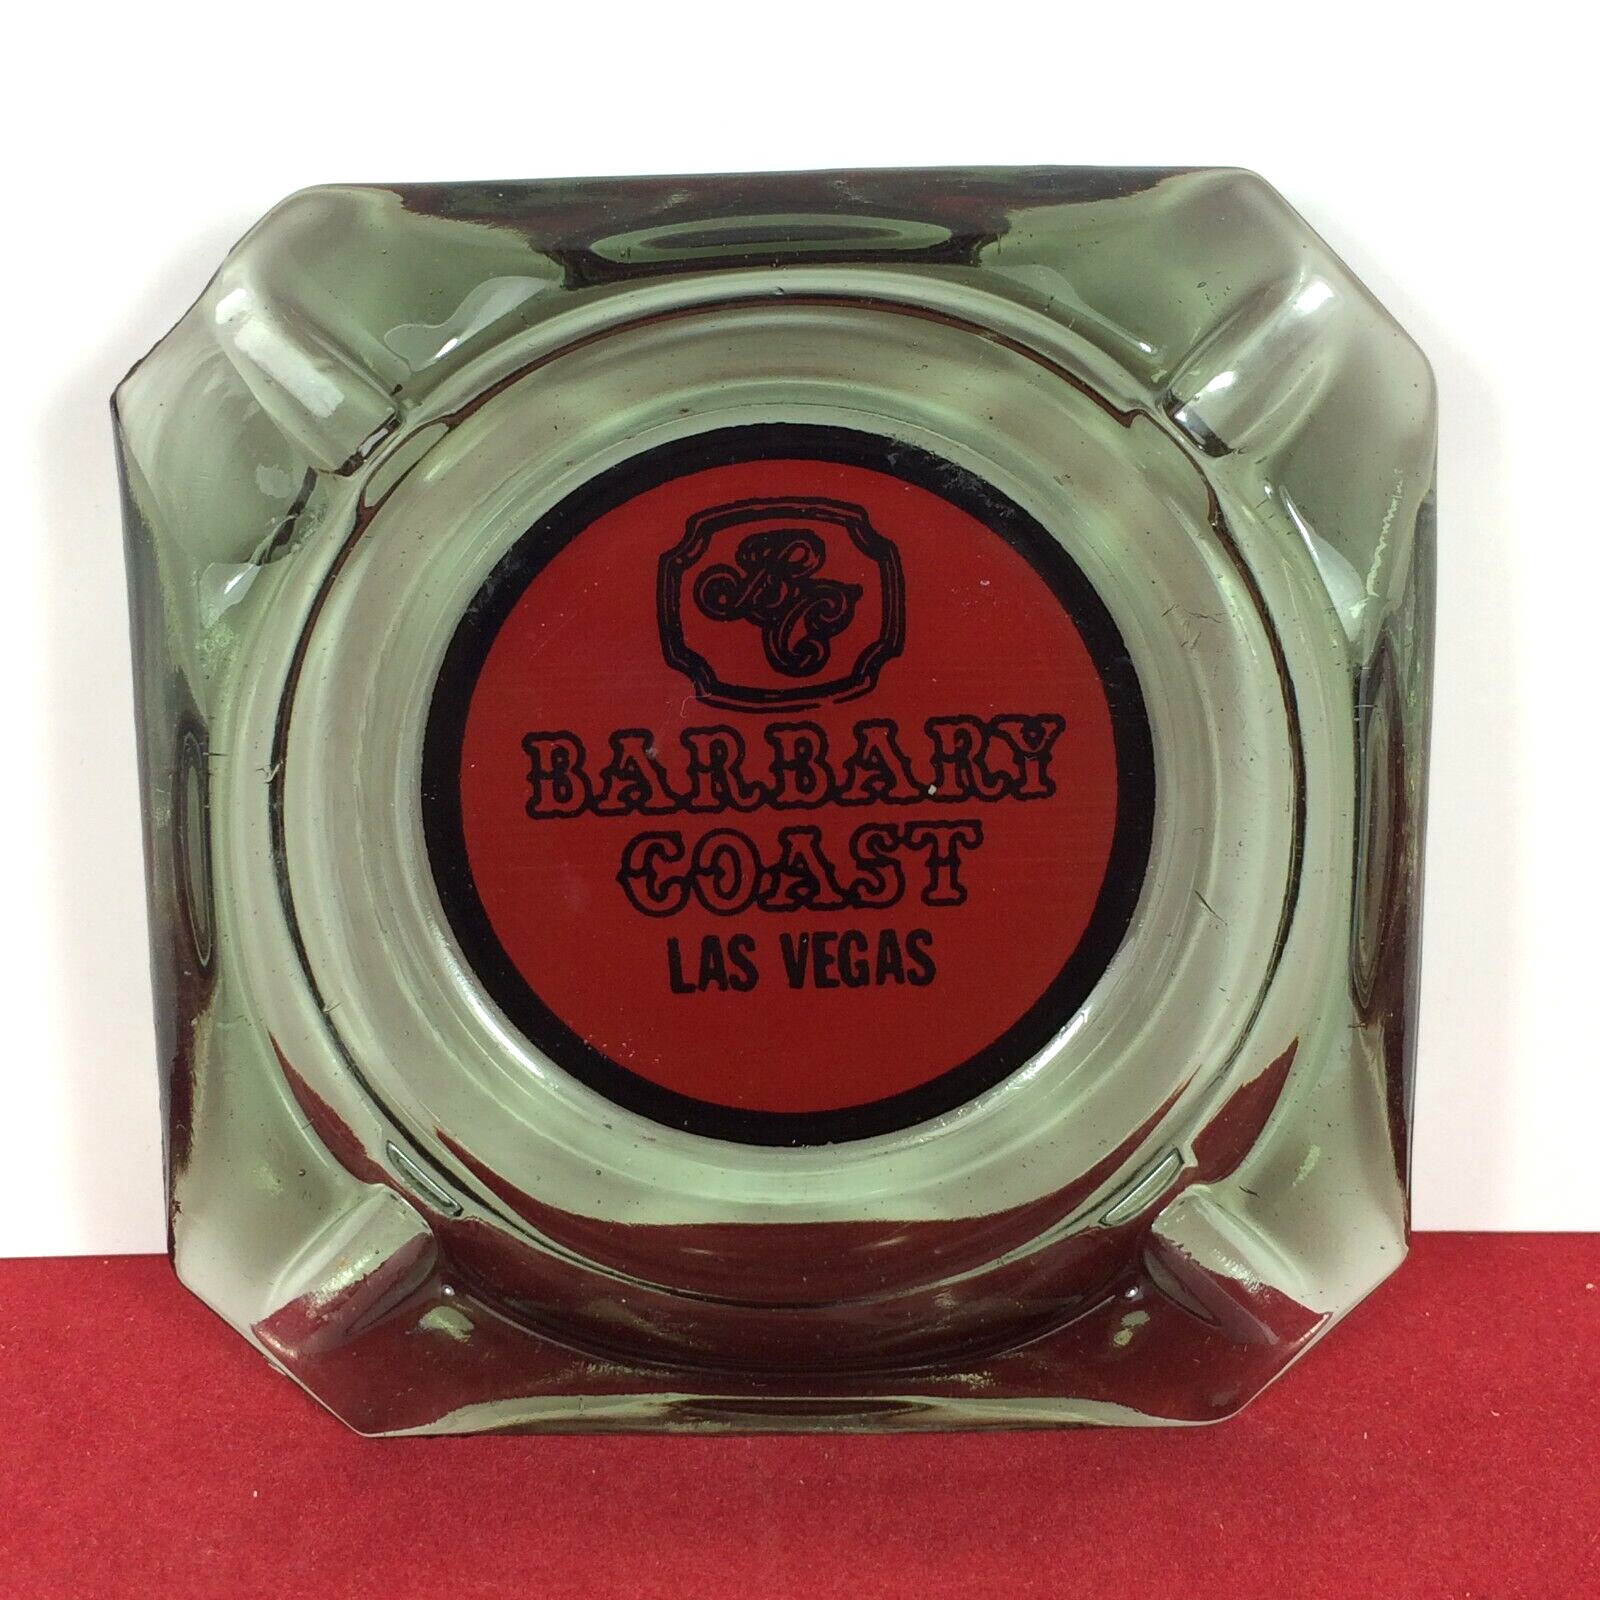 Vintage BARBARY COAST LAS VEGAS Casino Smoke Gray Glass Advertising Ashtray